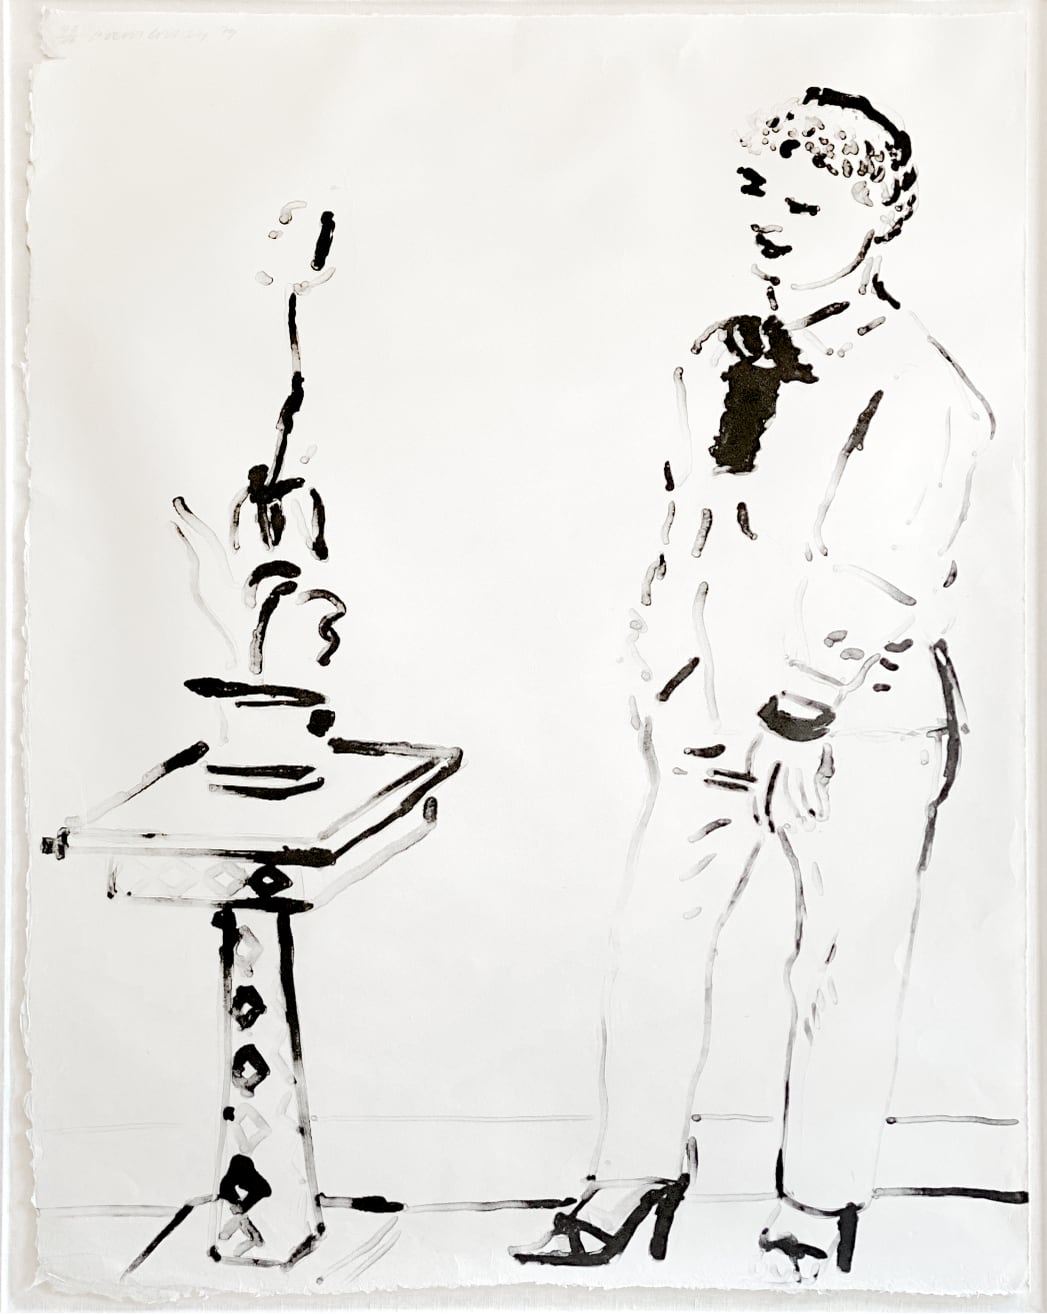 David Hockney - Celia amused